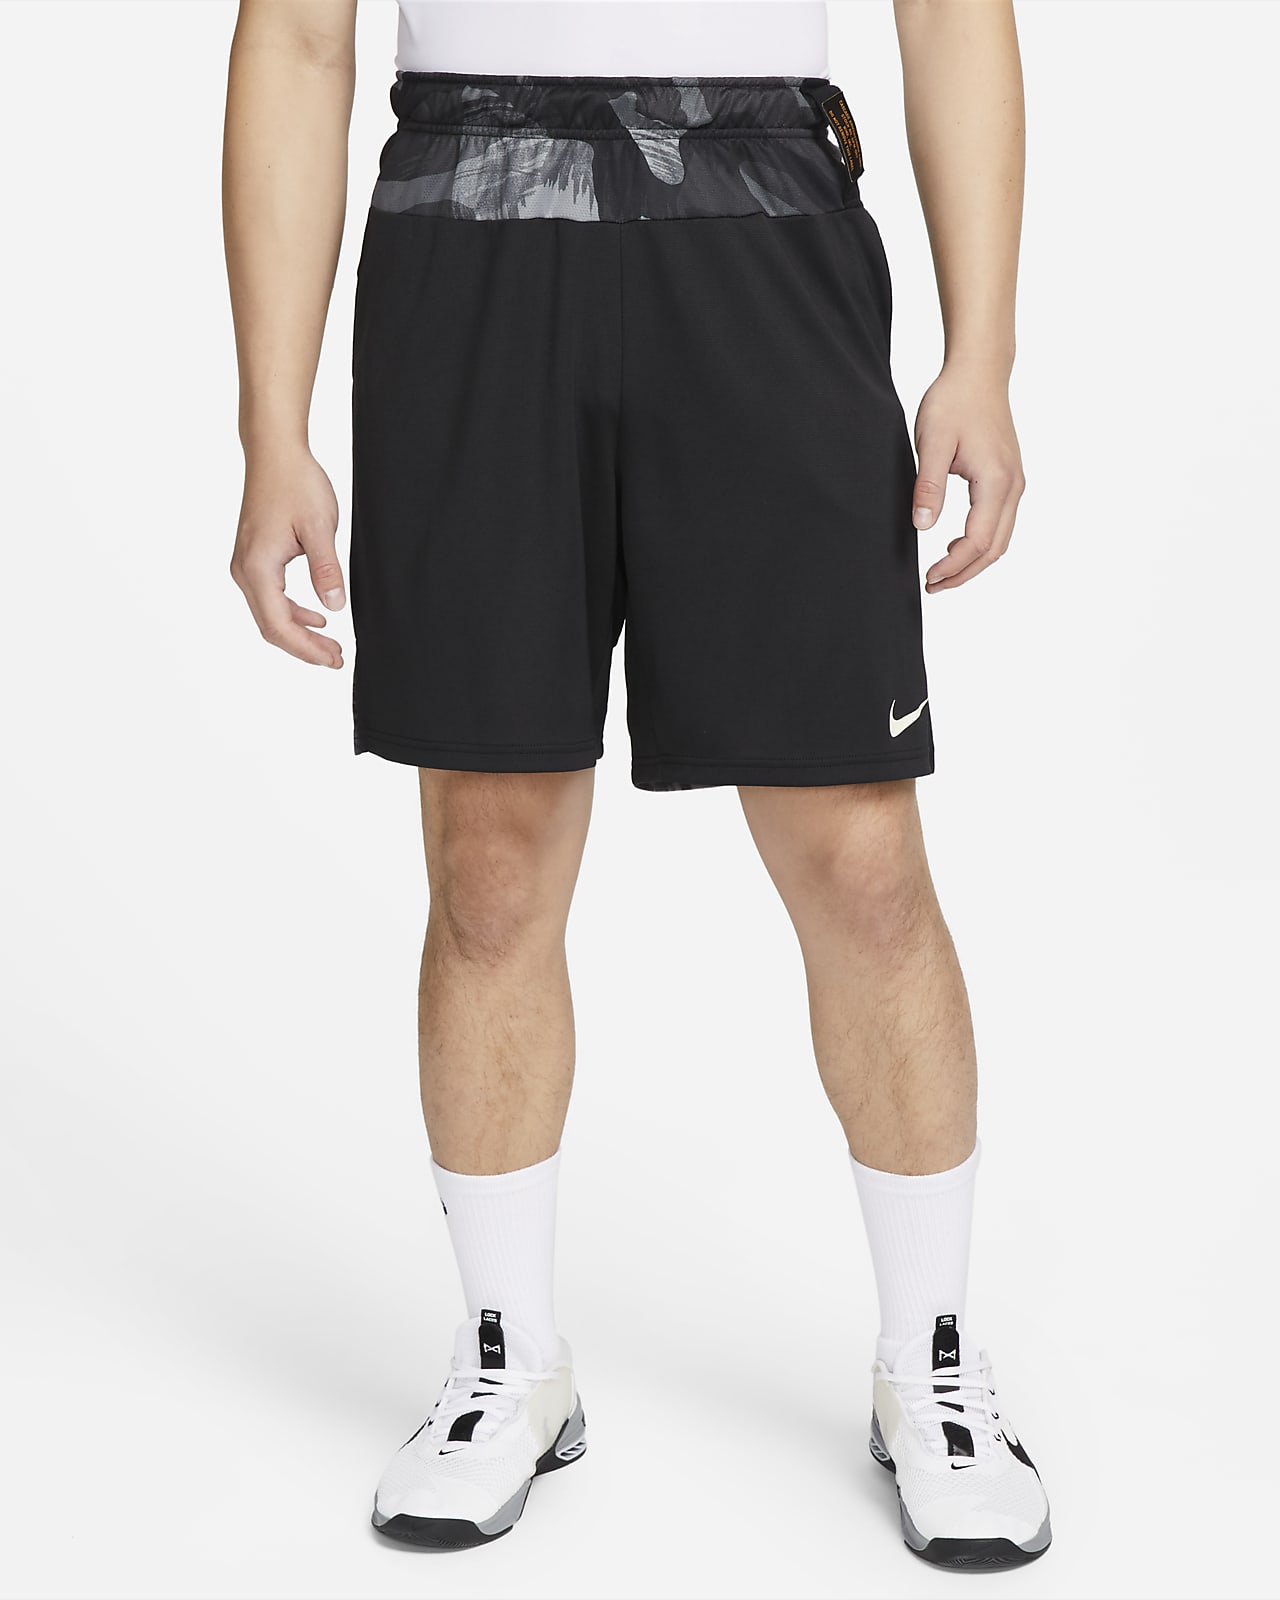 กางเกงเทรนนิ่งขาสั้นลายพรางแบบถักผู้ชาย Nike Dri-FIT